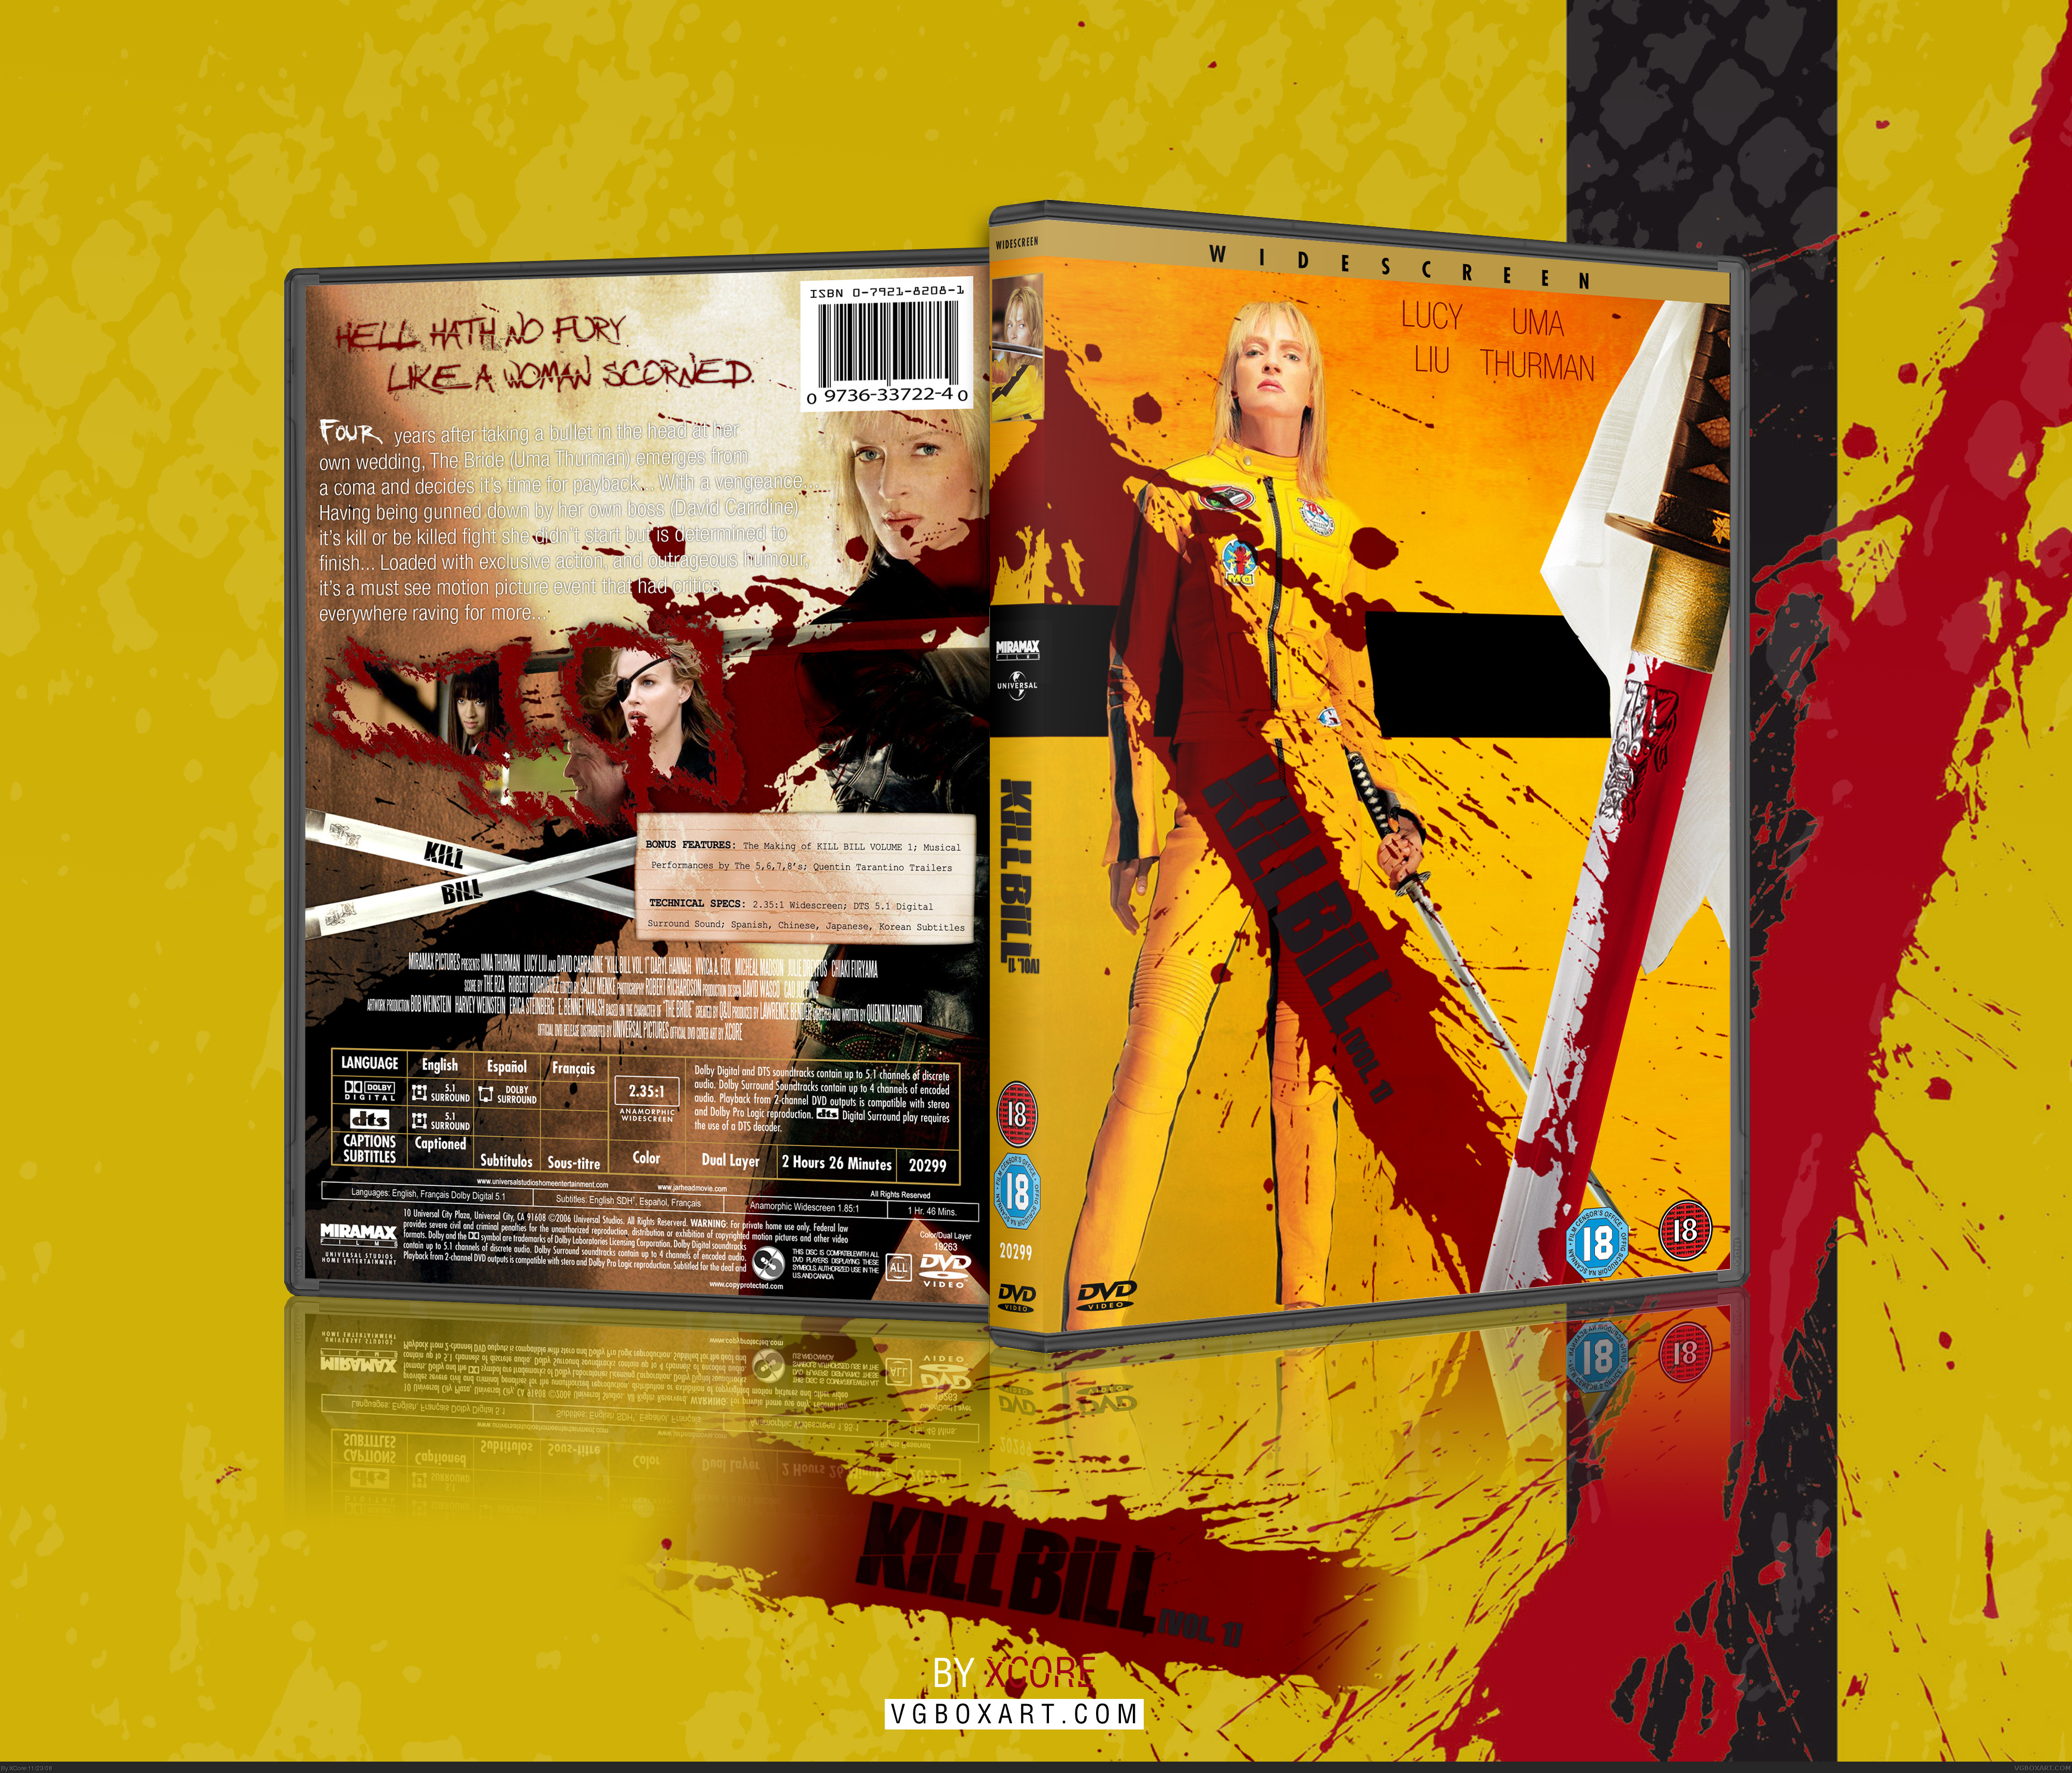 Kill Bill Vol. 1 box cover